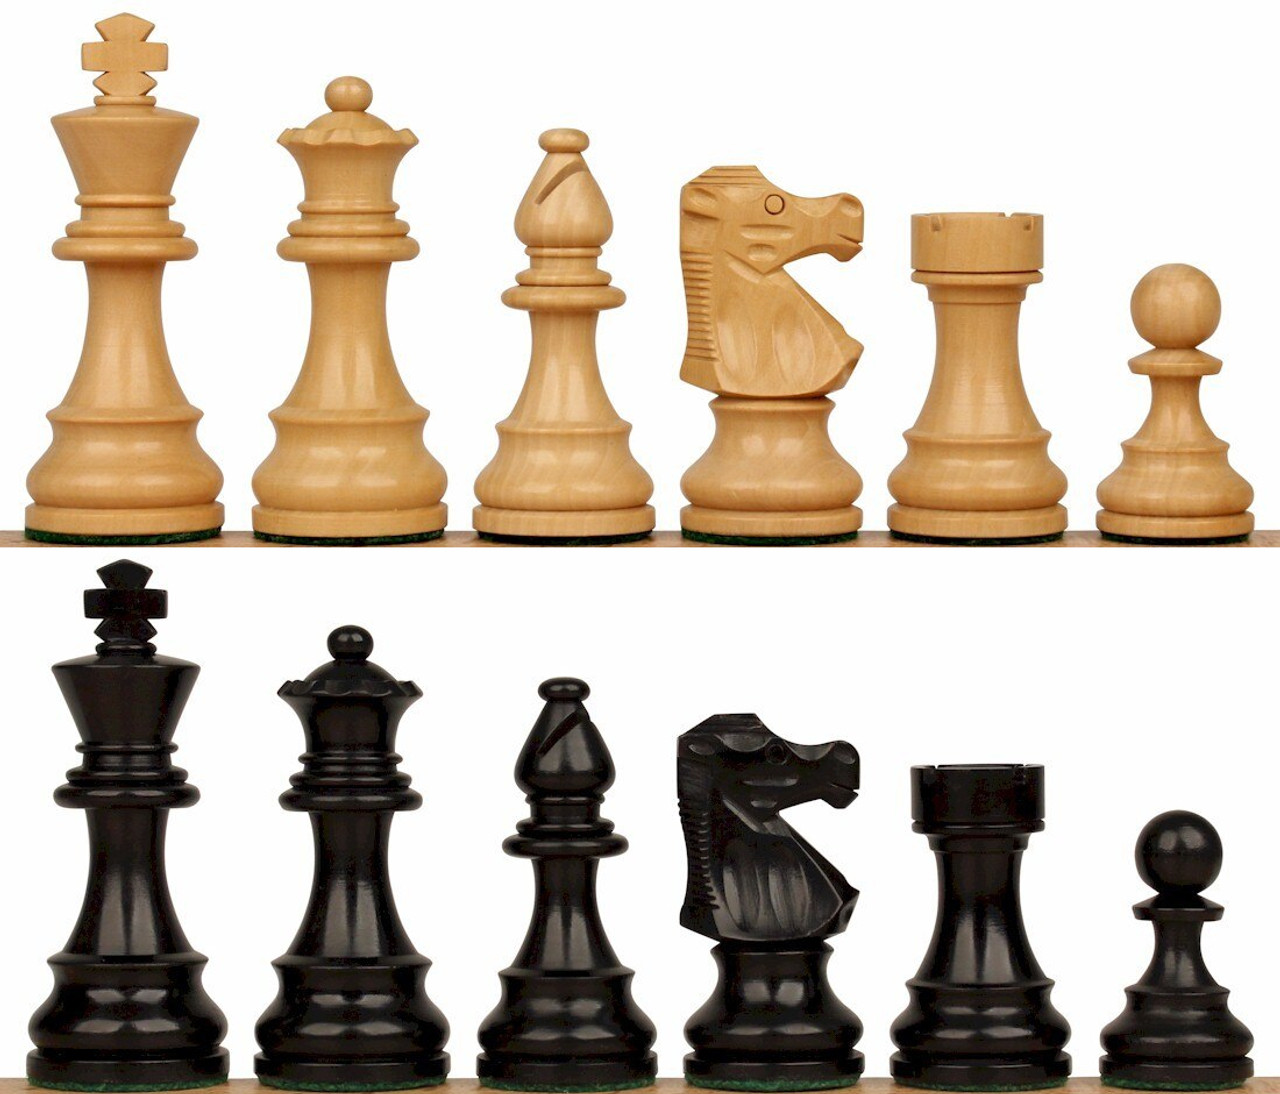 French Lardy Staunton Chess Set Ebonized & Boxwood Pieces with